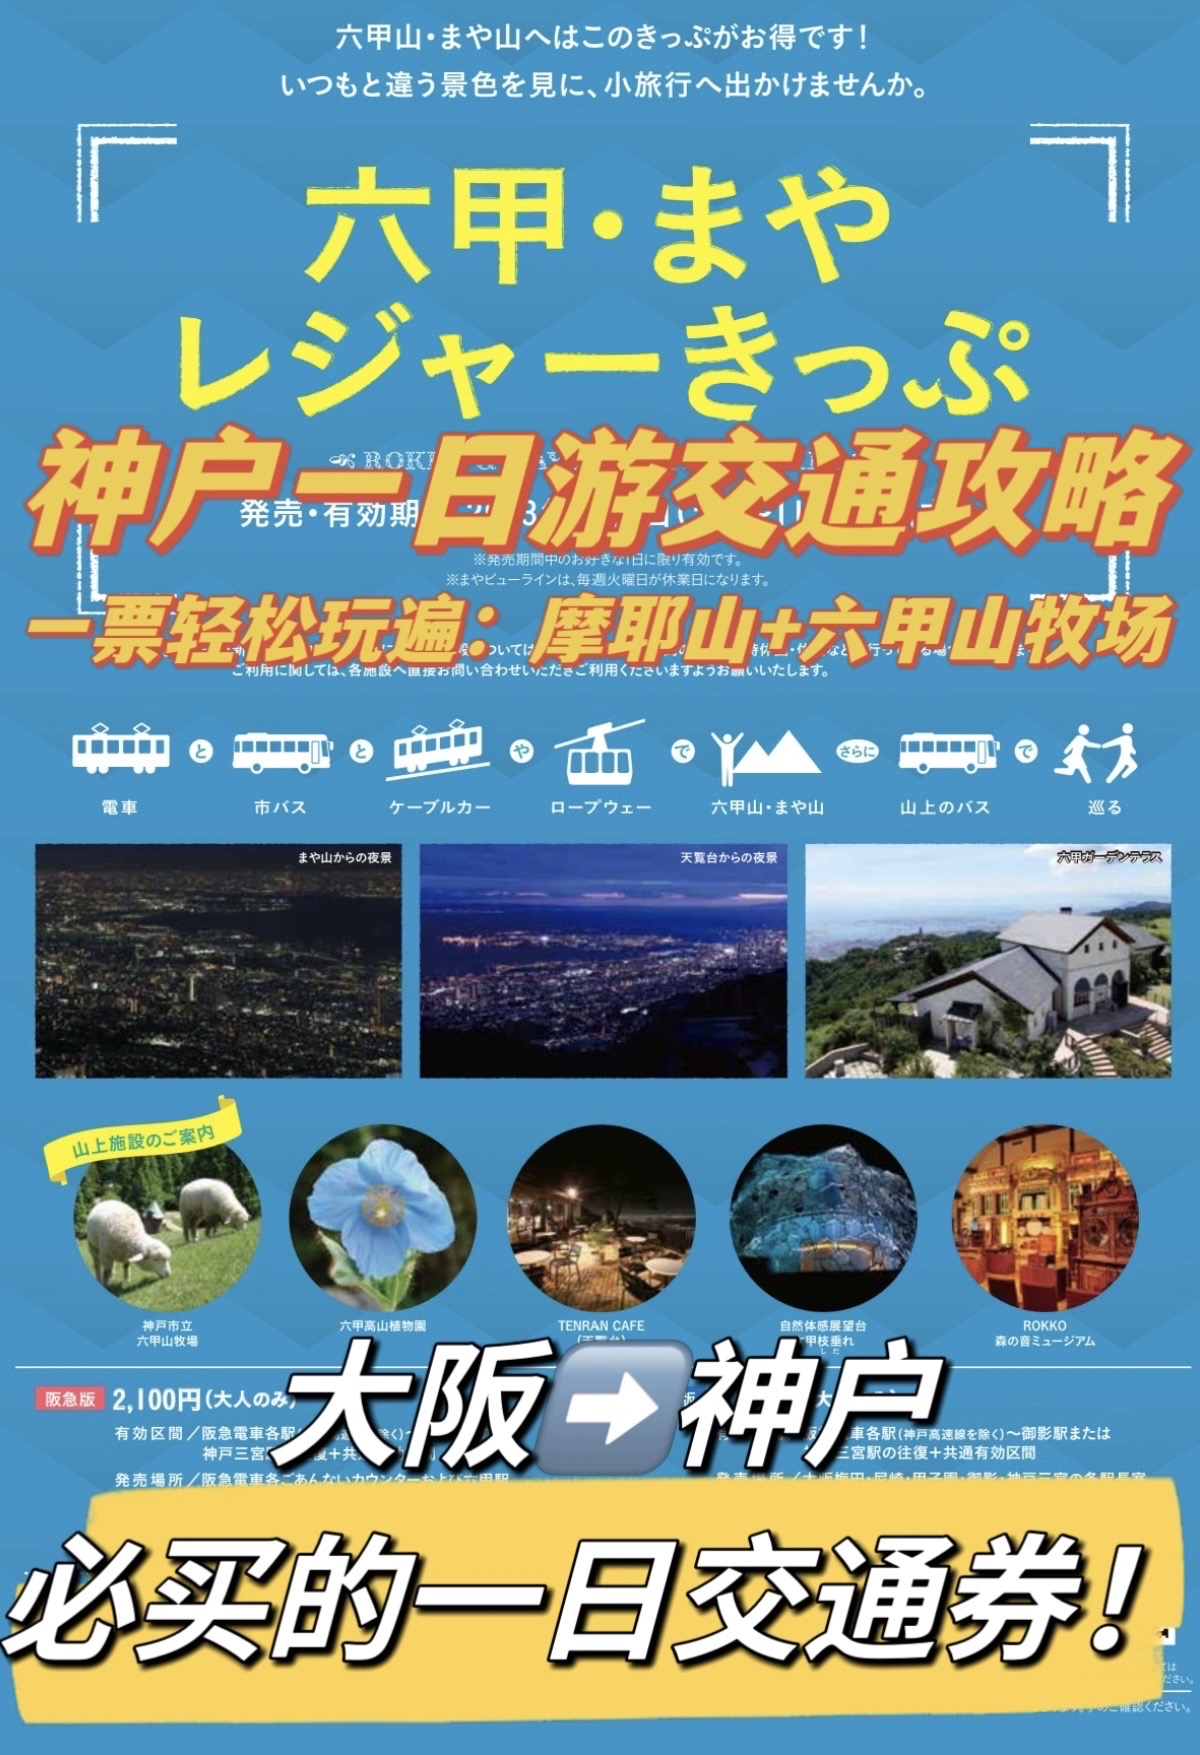 大阪➡️神户一日游交通🤩怎么去摩耶➕六甲山？